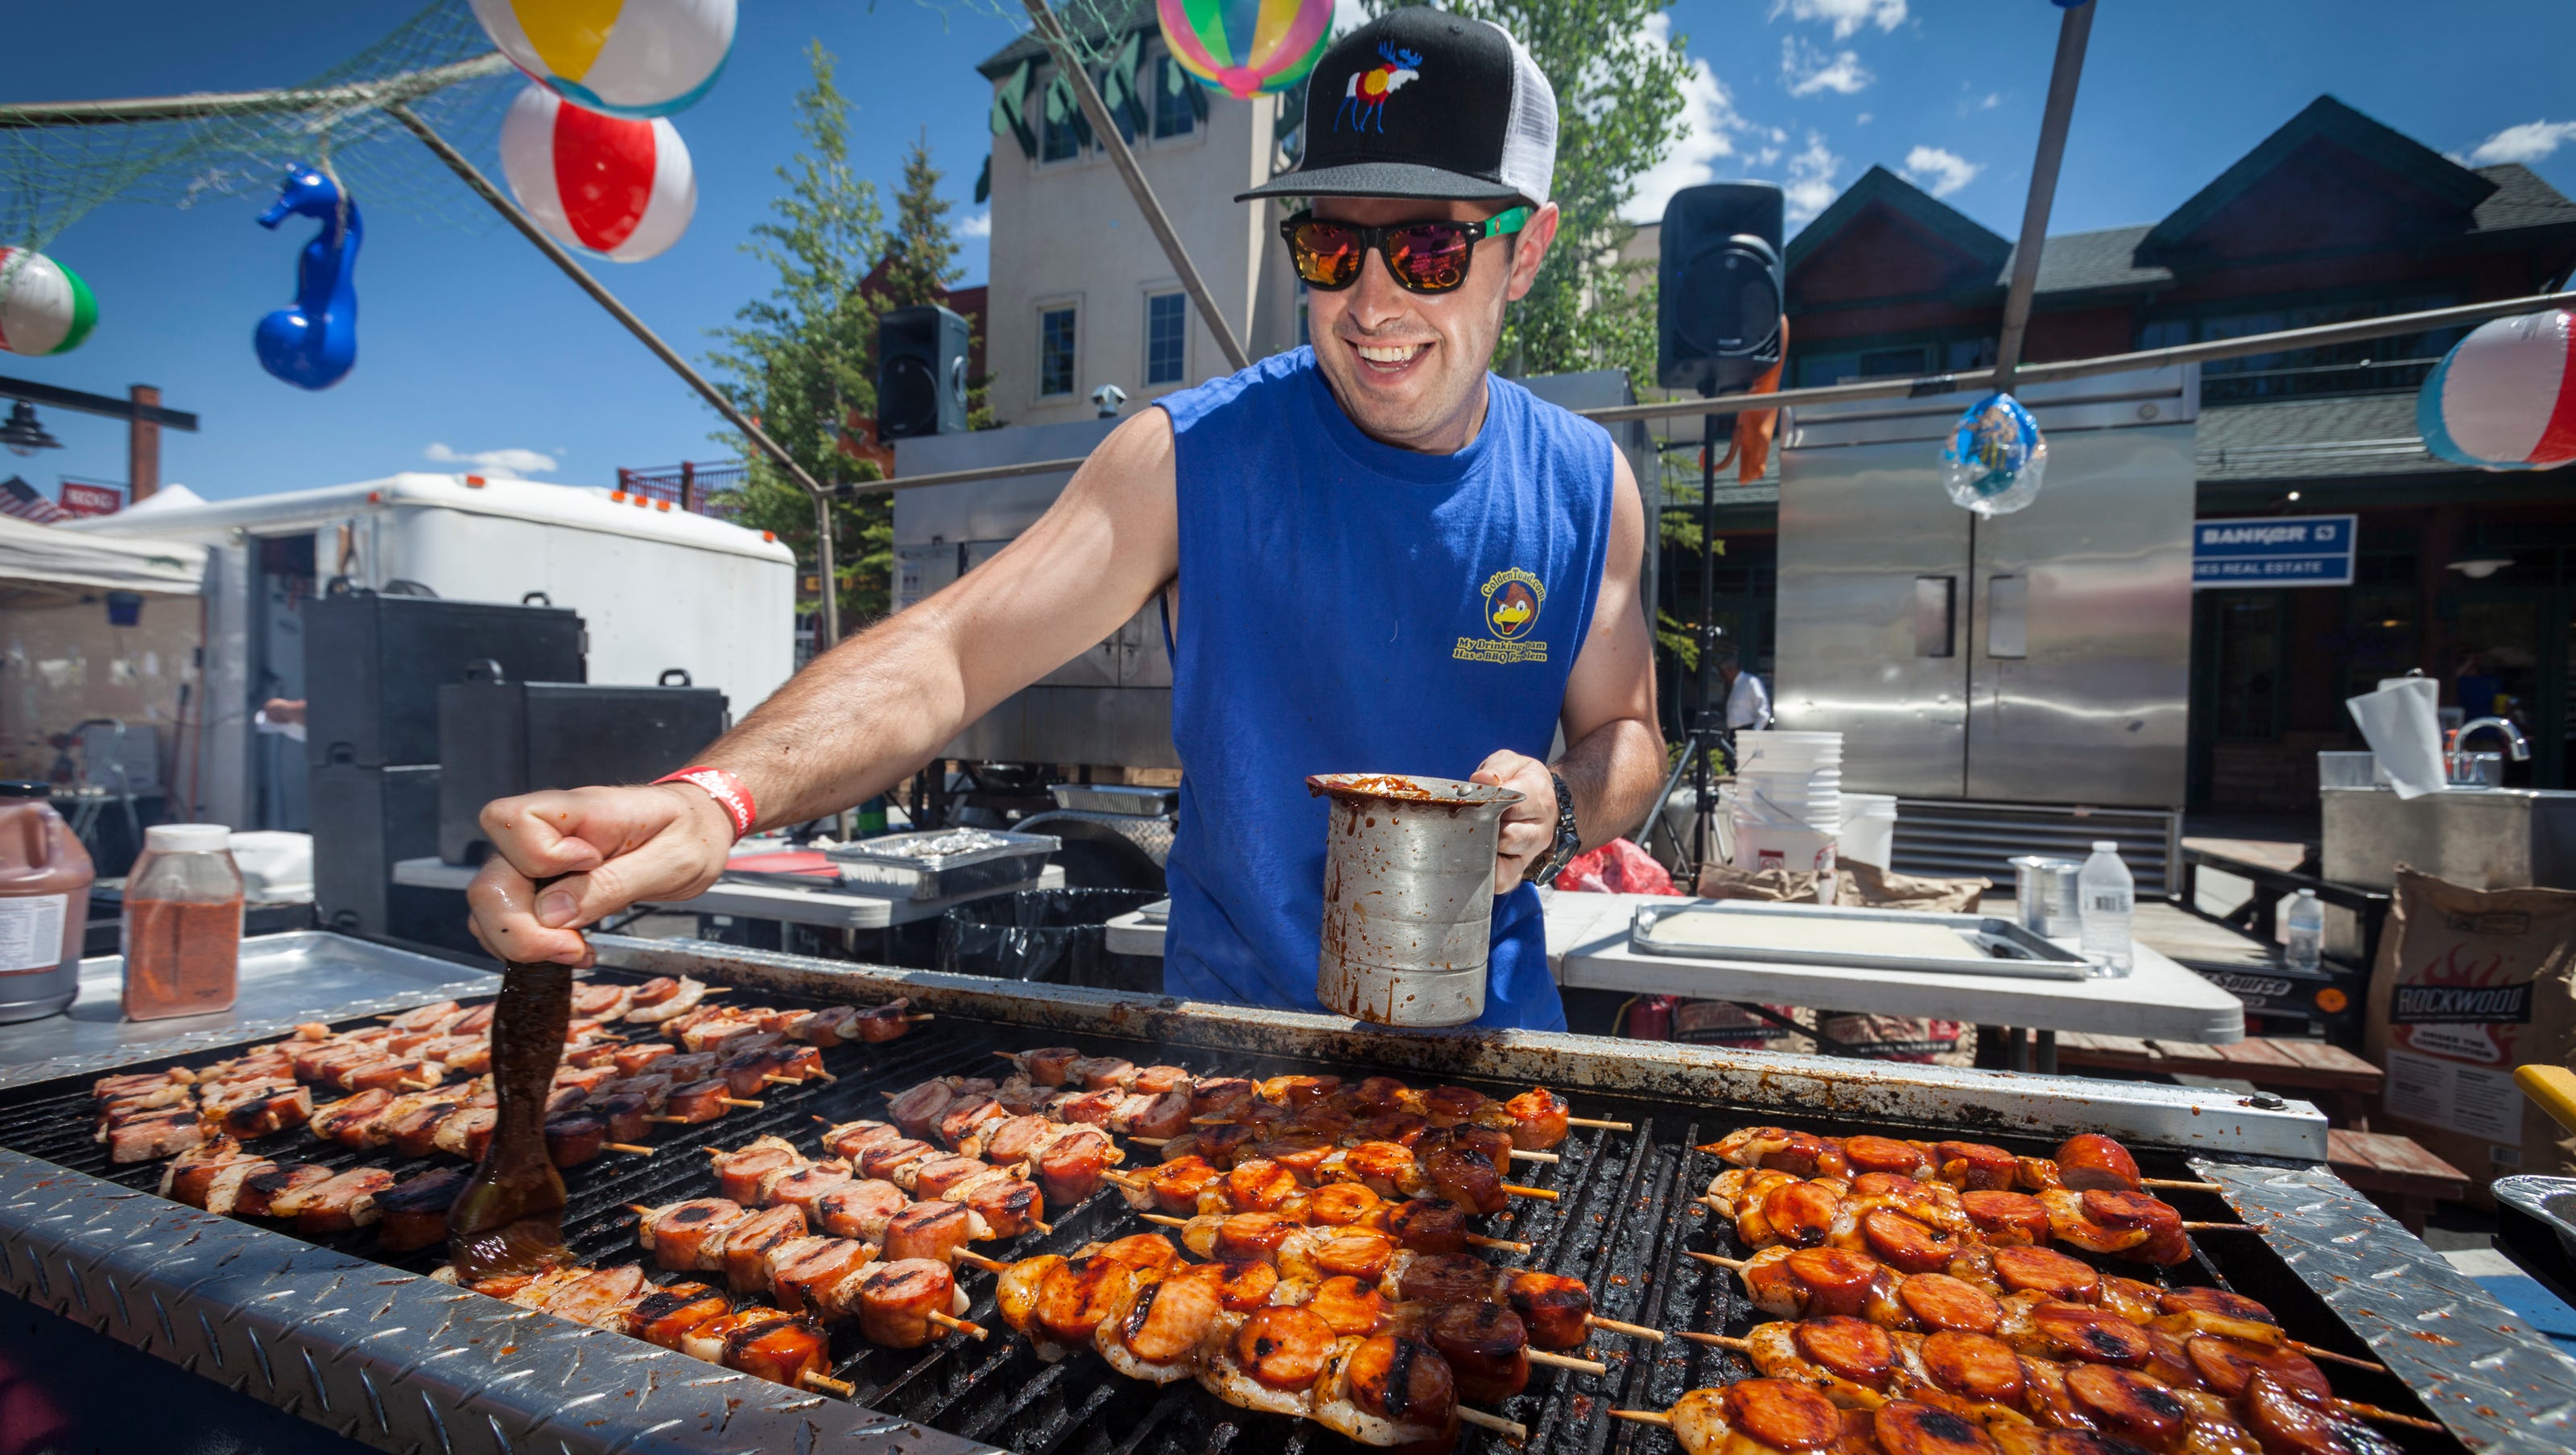 America's annual barbecue festivals